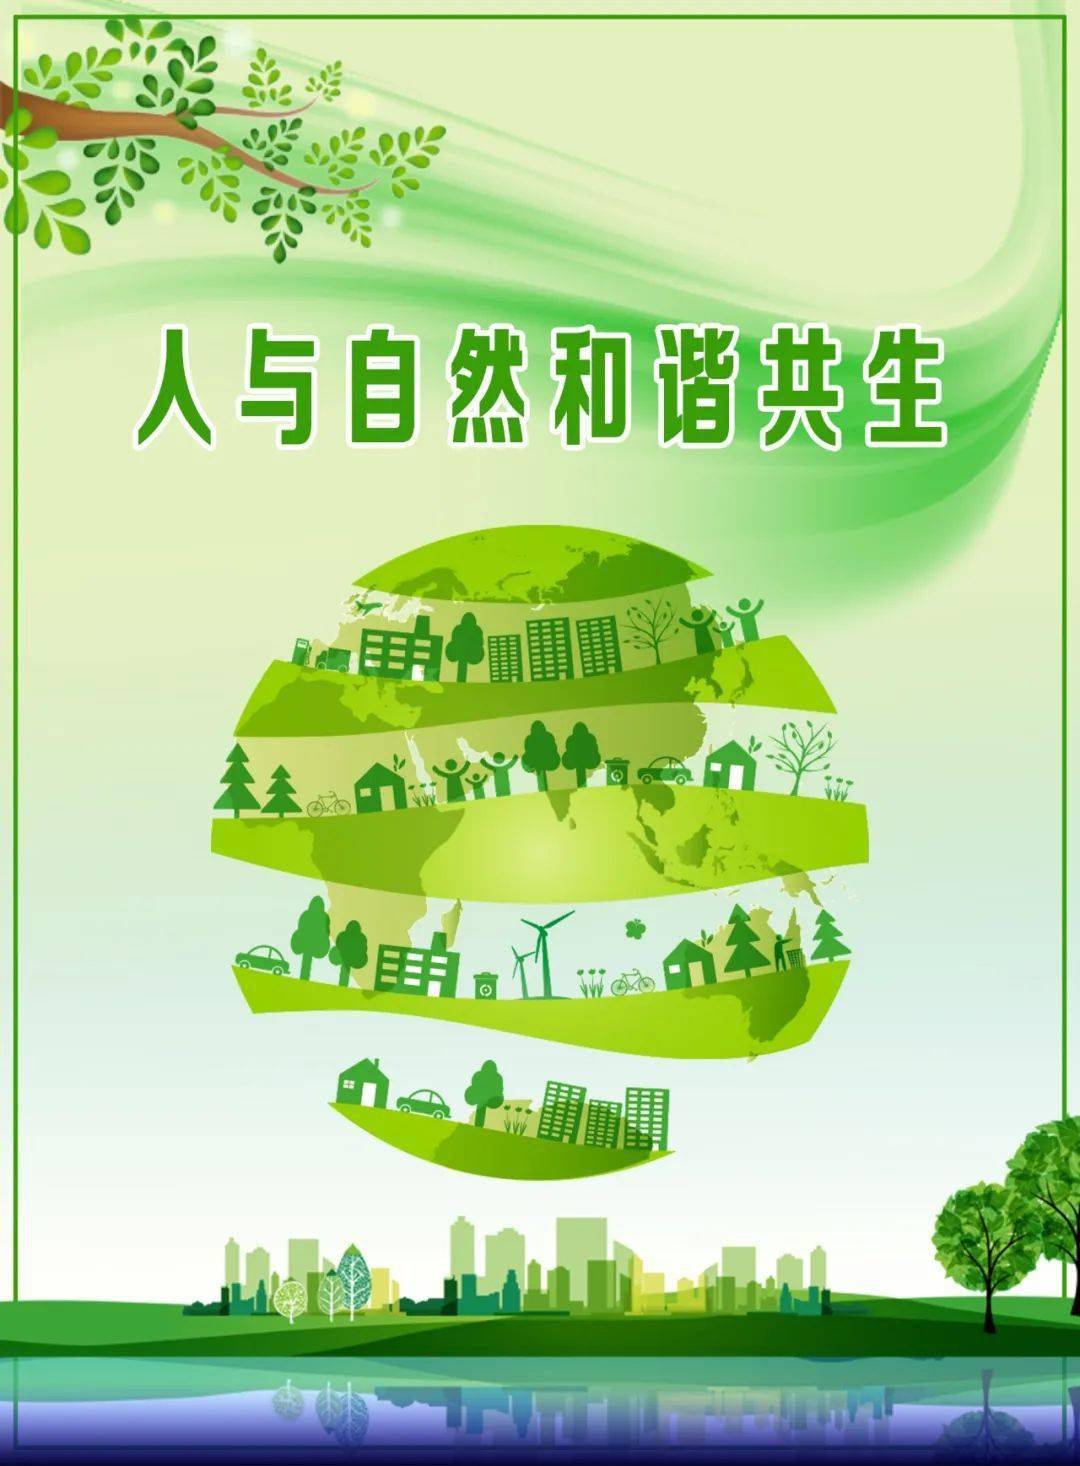 快讯生态环境部发布2021年六五环境日主题人与自然和谐共生